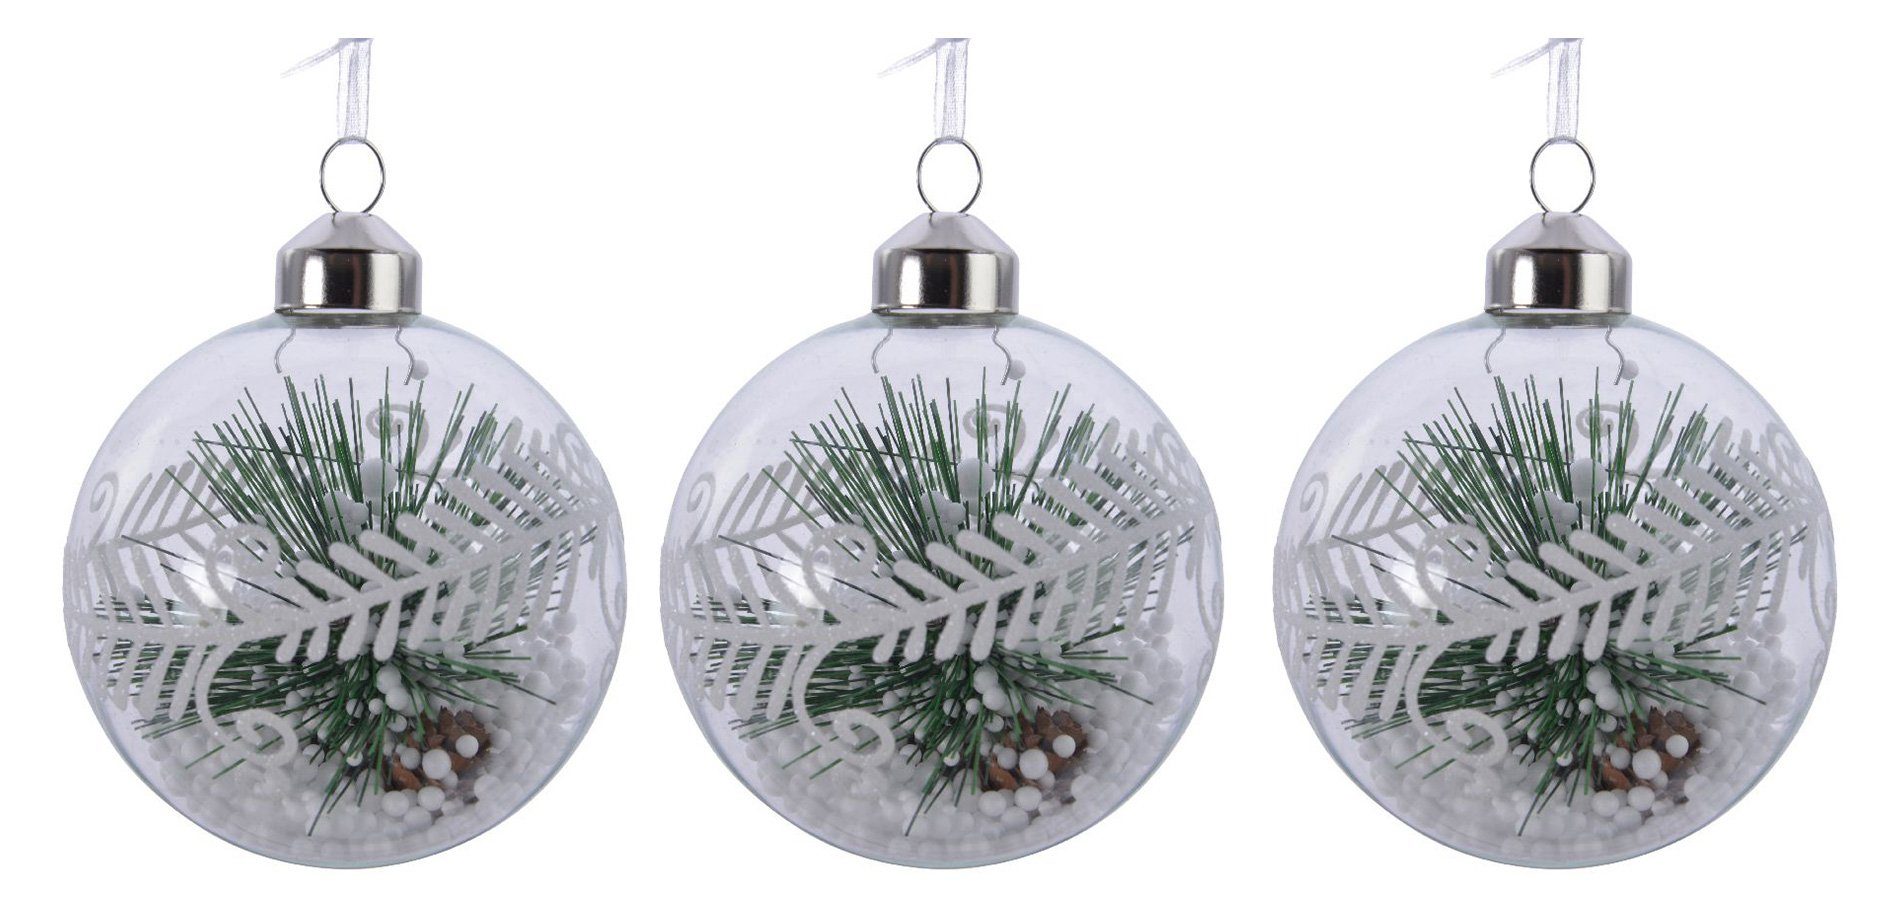 Decoris season decorations Christbaumschmuck, Weihnachtskugeln gefüllt mit Tannenzweig Glas 8cm, 3 Stück